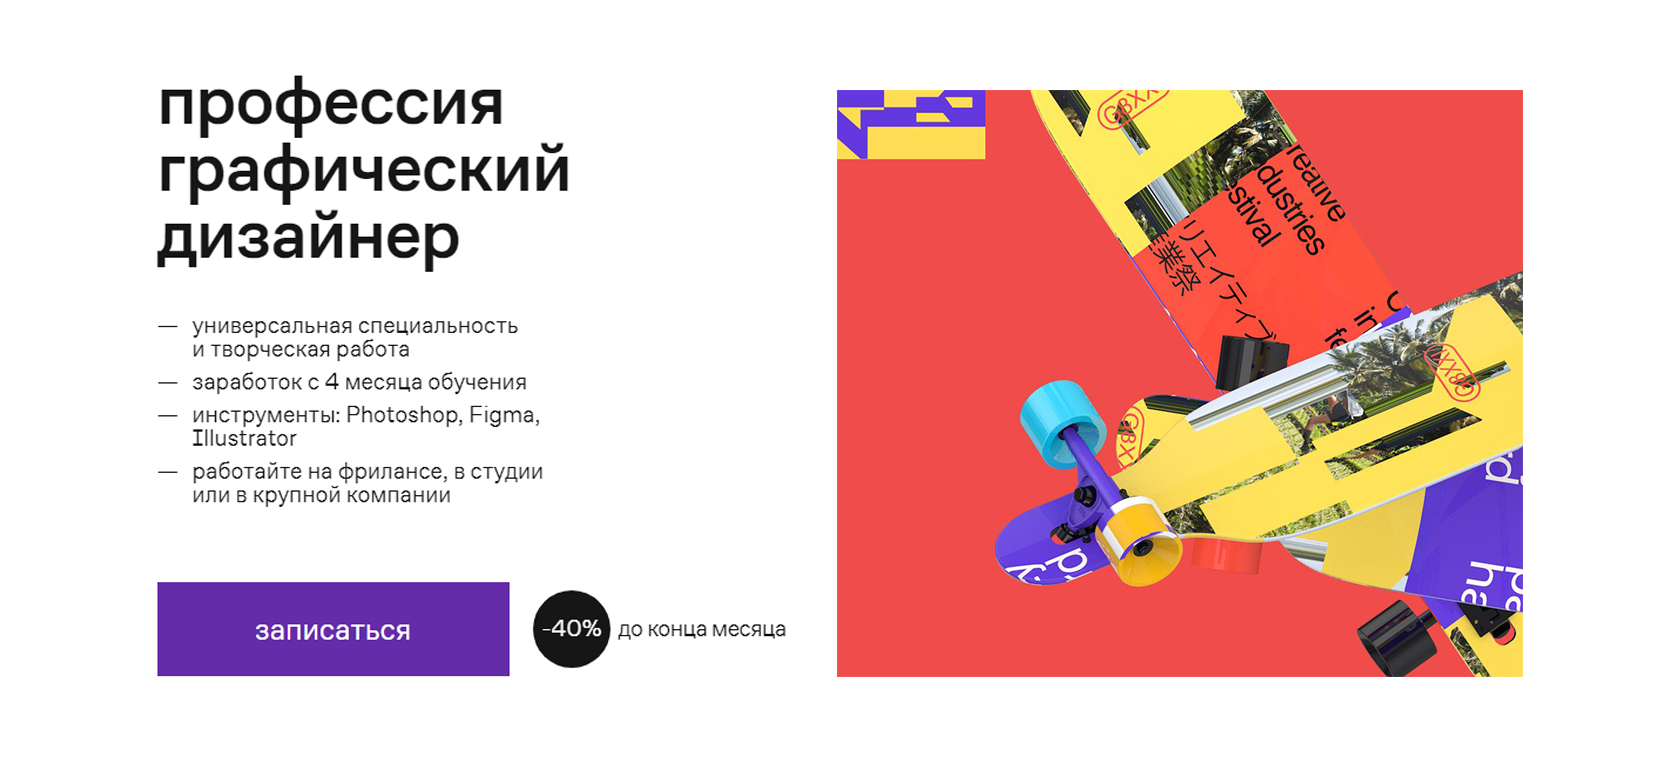 Графический дизайн - Заказать в компании XLformat в Москве